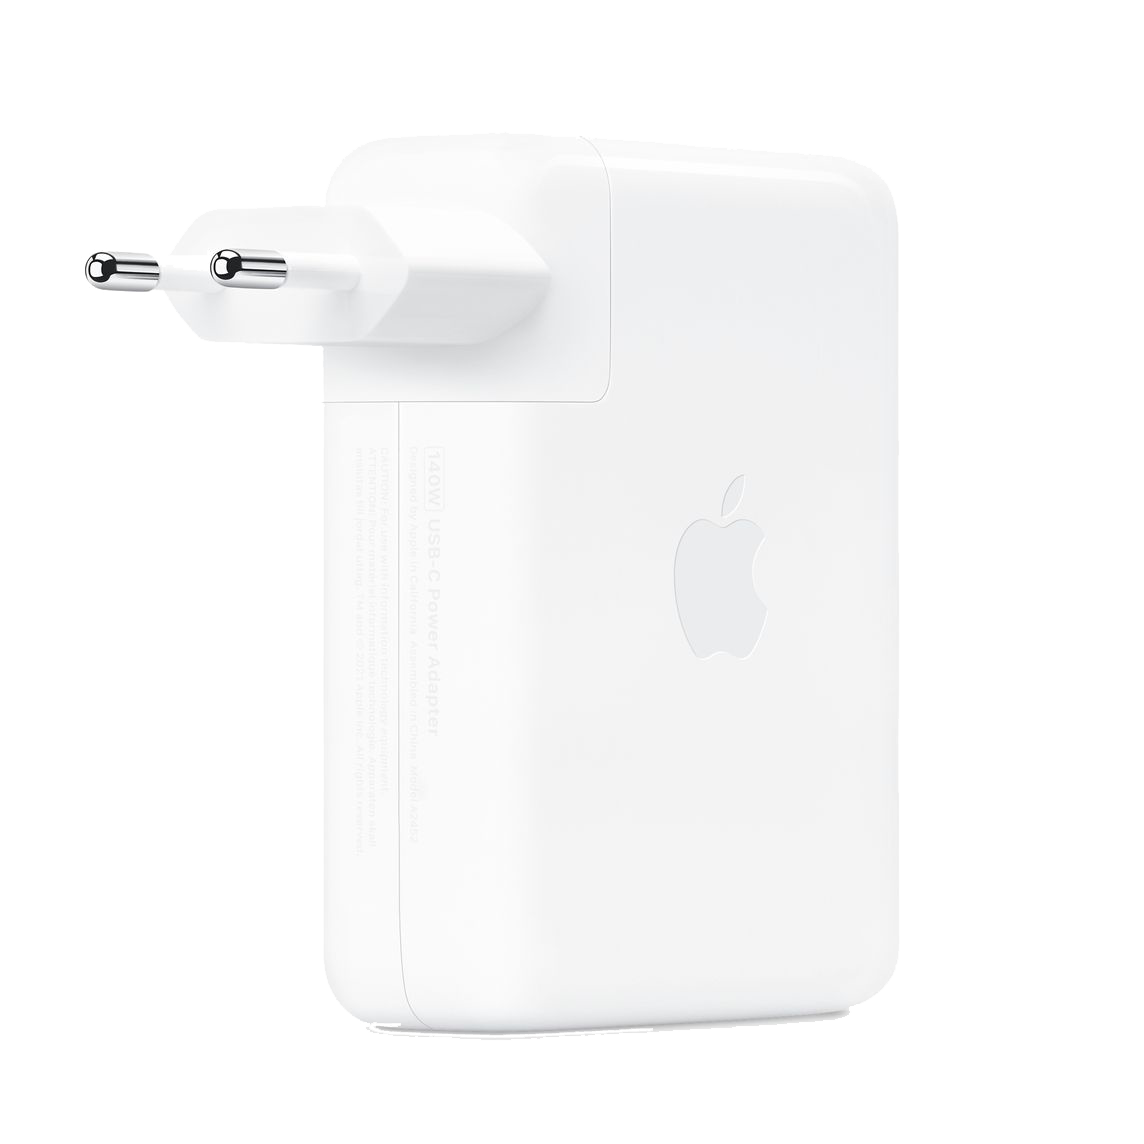 Apple Adaptateur secteur USB-C - 140W - Blanc